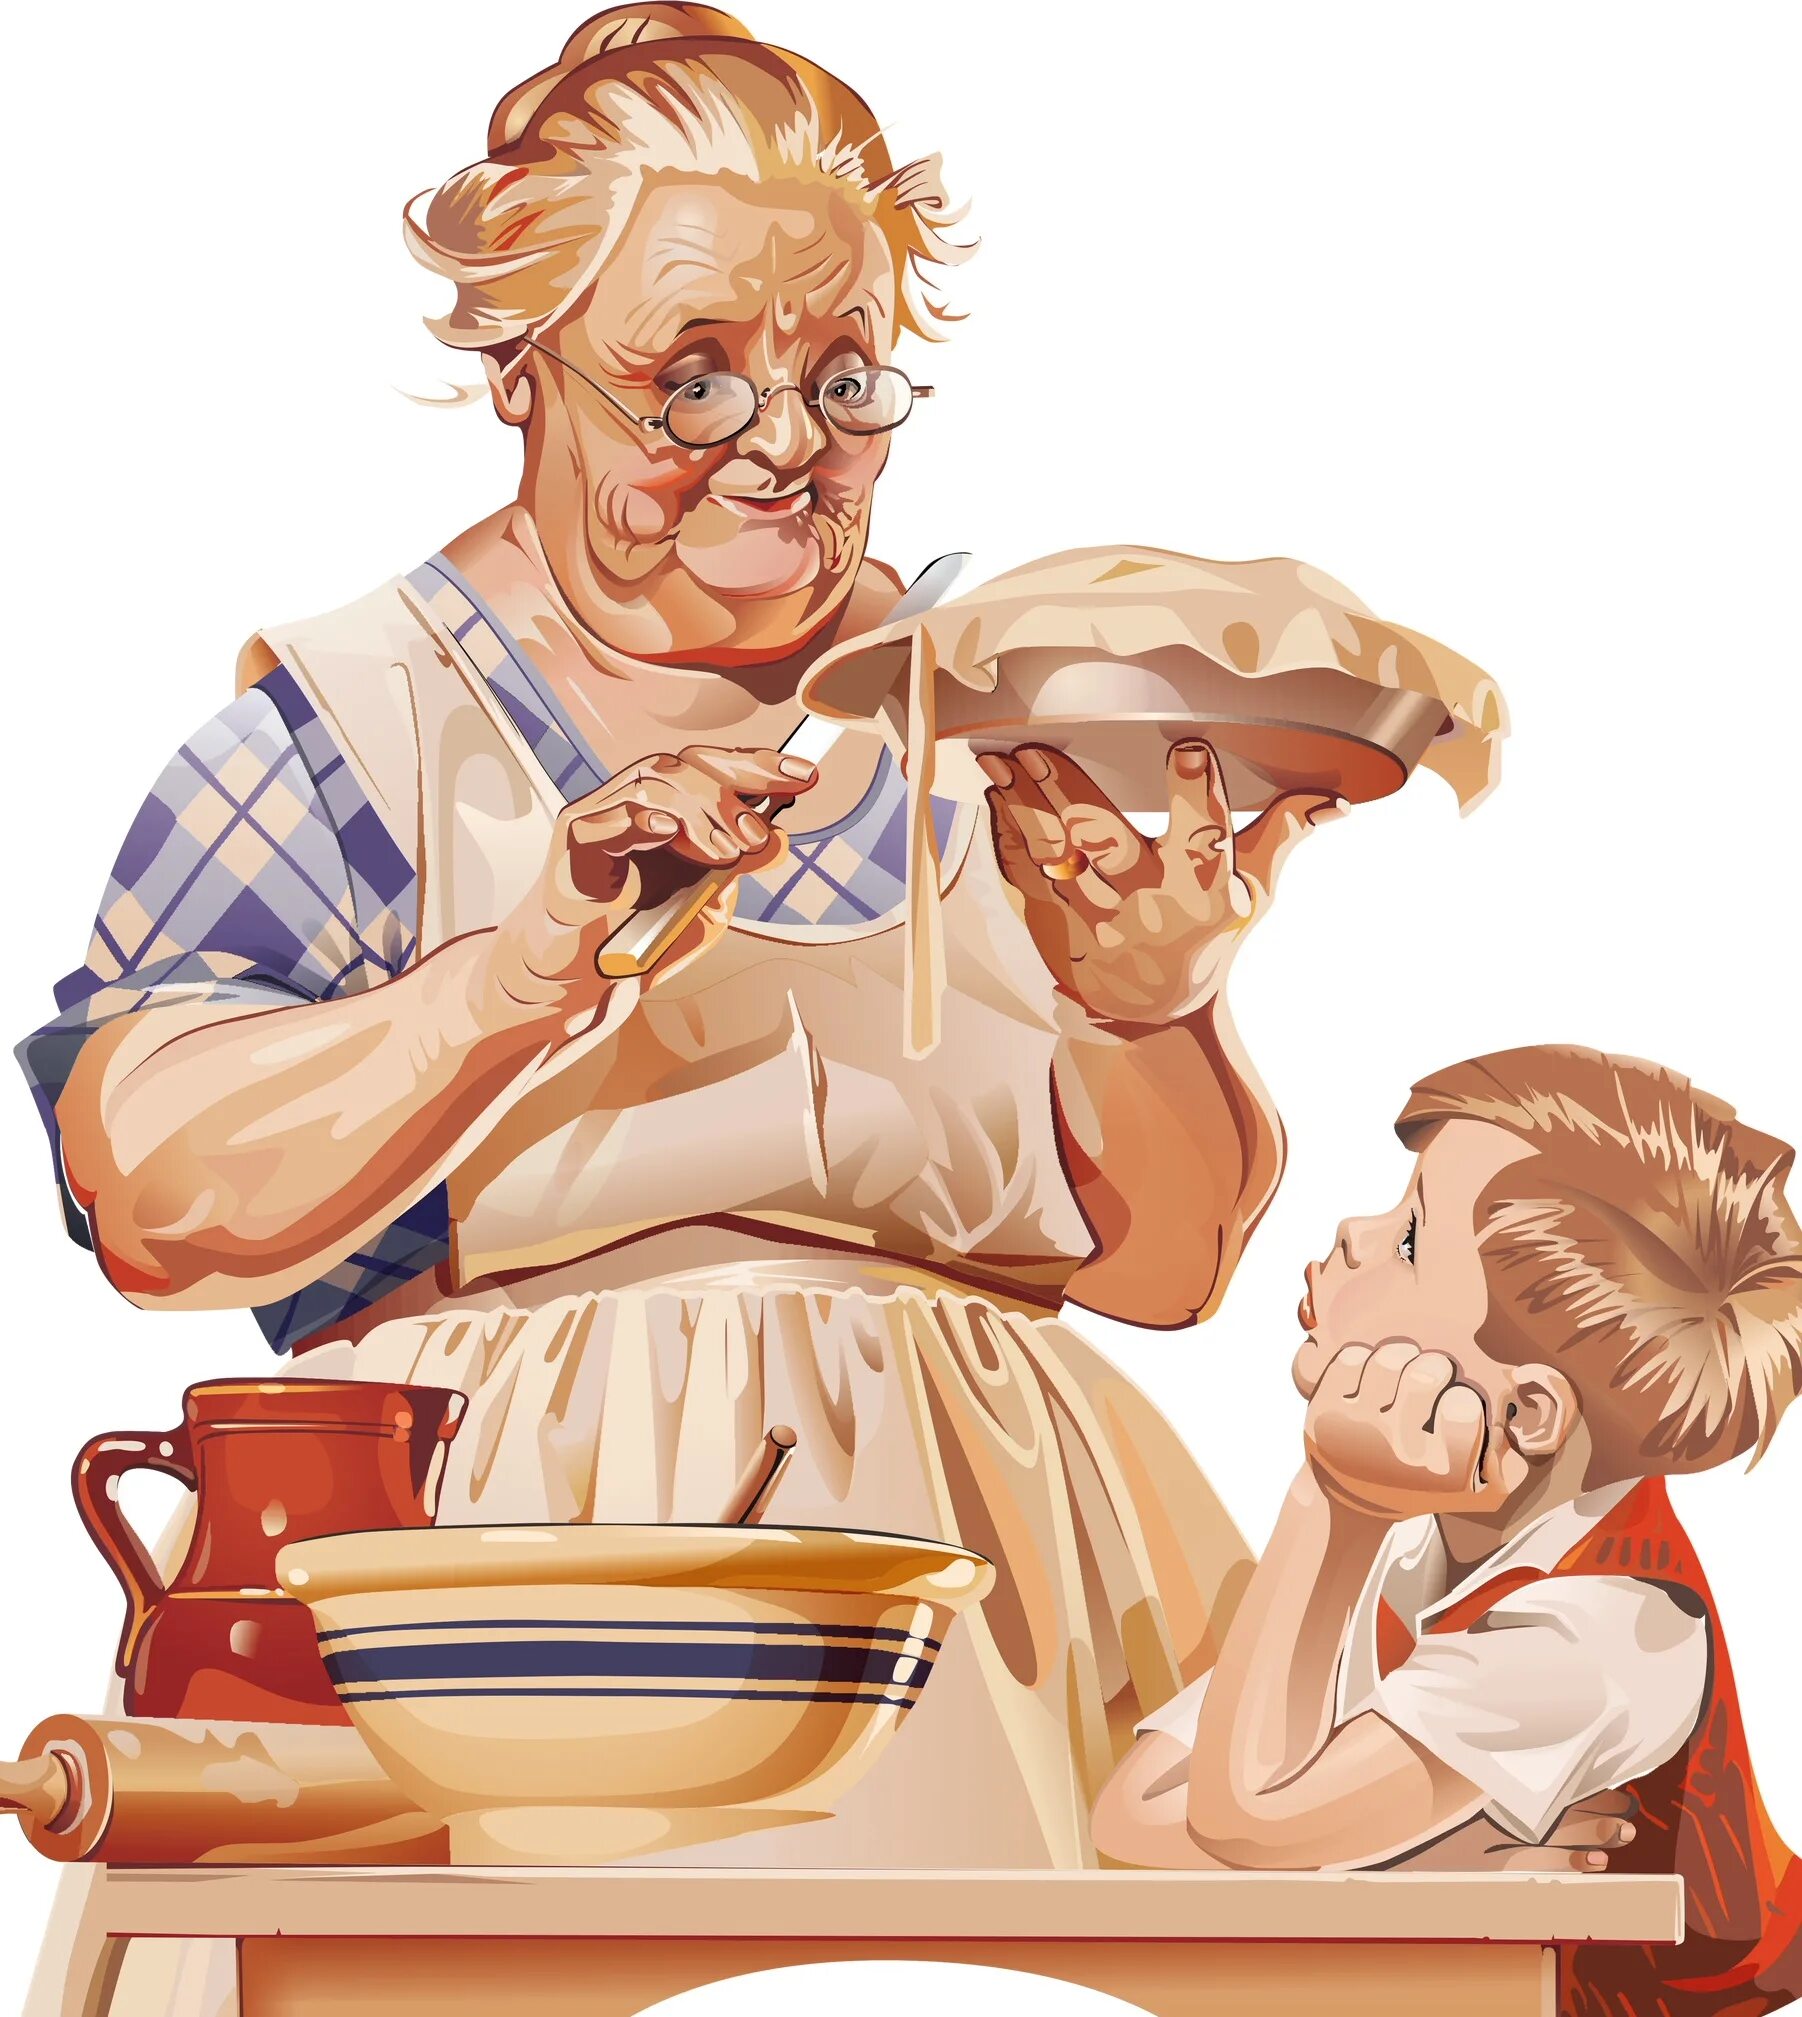 Бабушка варит. Бабушка иллюстрация. Бабушка с выпечкой. Бабушка и внук пироги. Бабушка с пирожками.